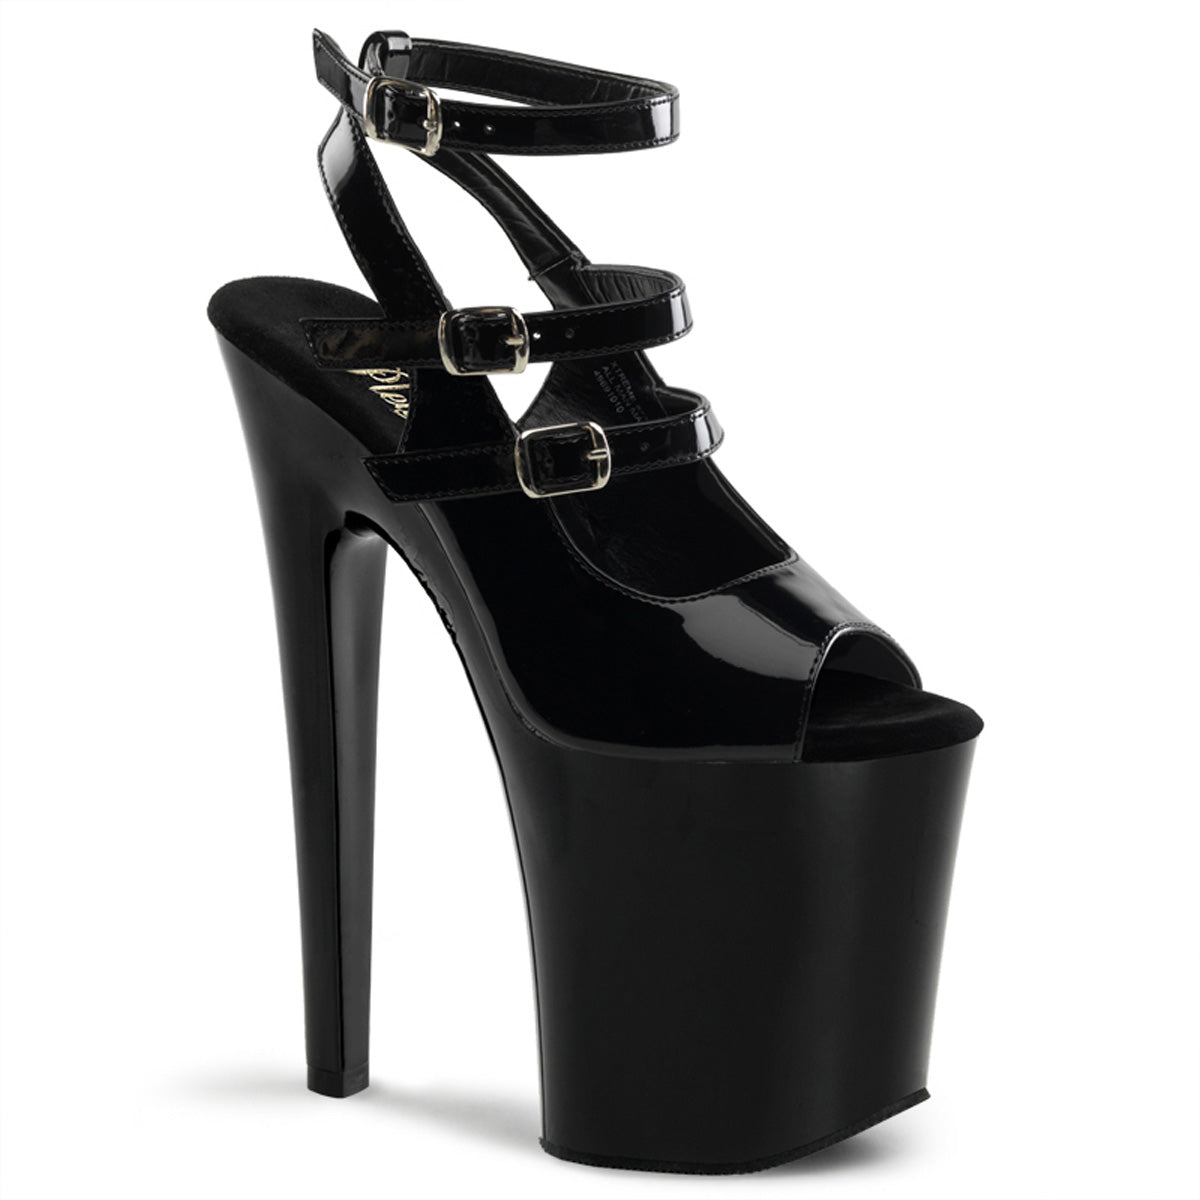 XTREME-873 8" Heel Black Patent Pole Dancer Platform Shoes Shoes